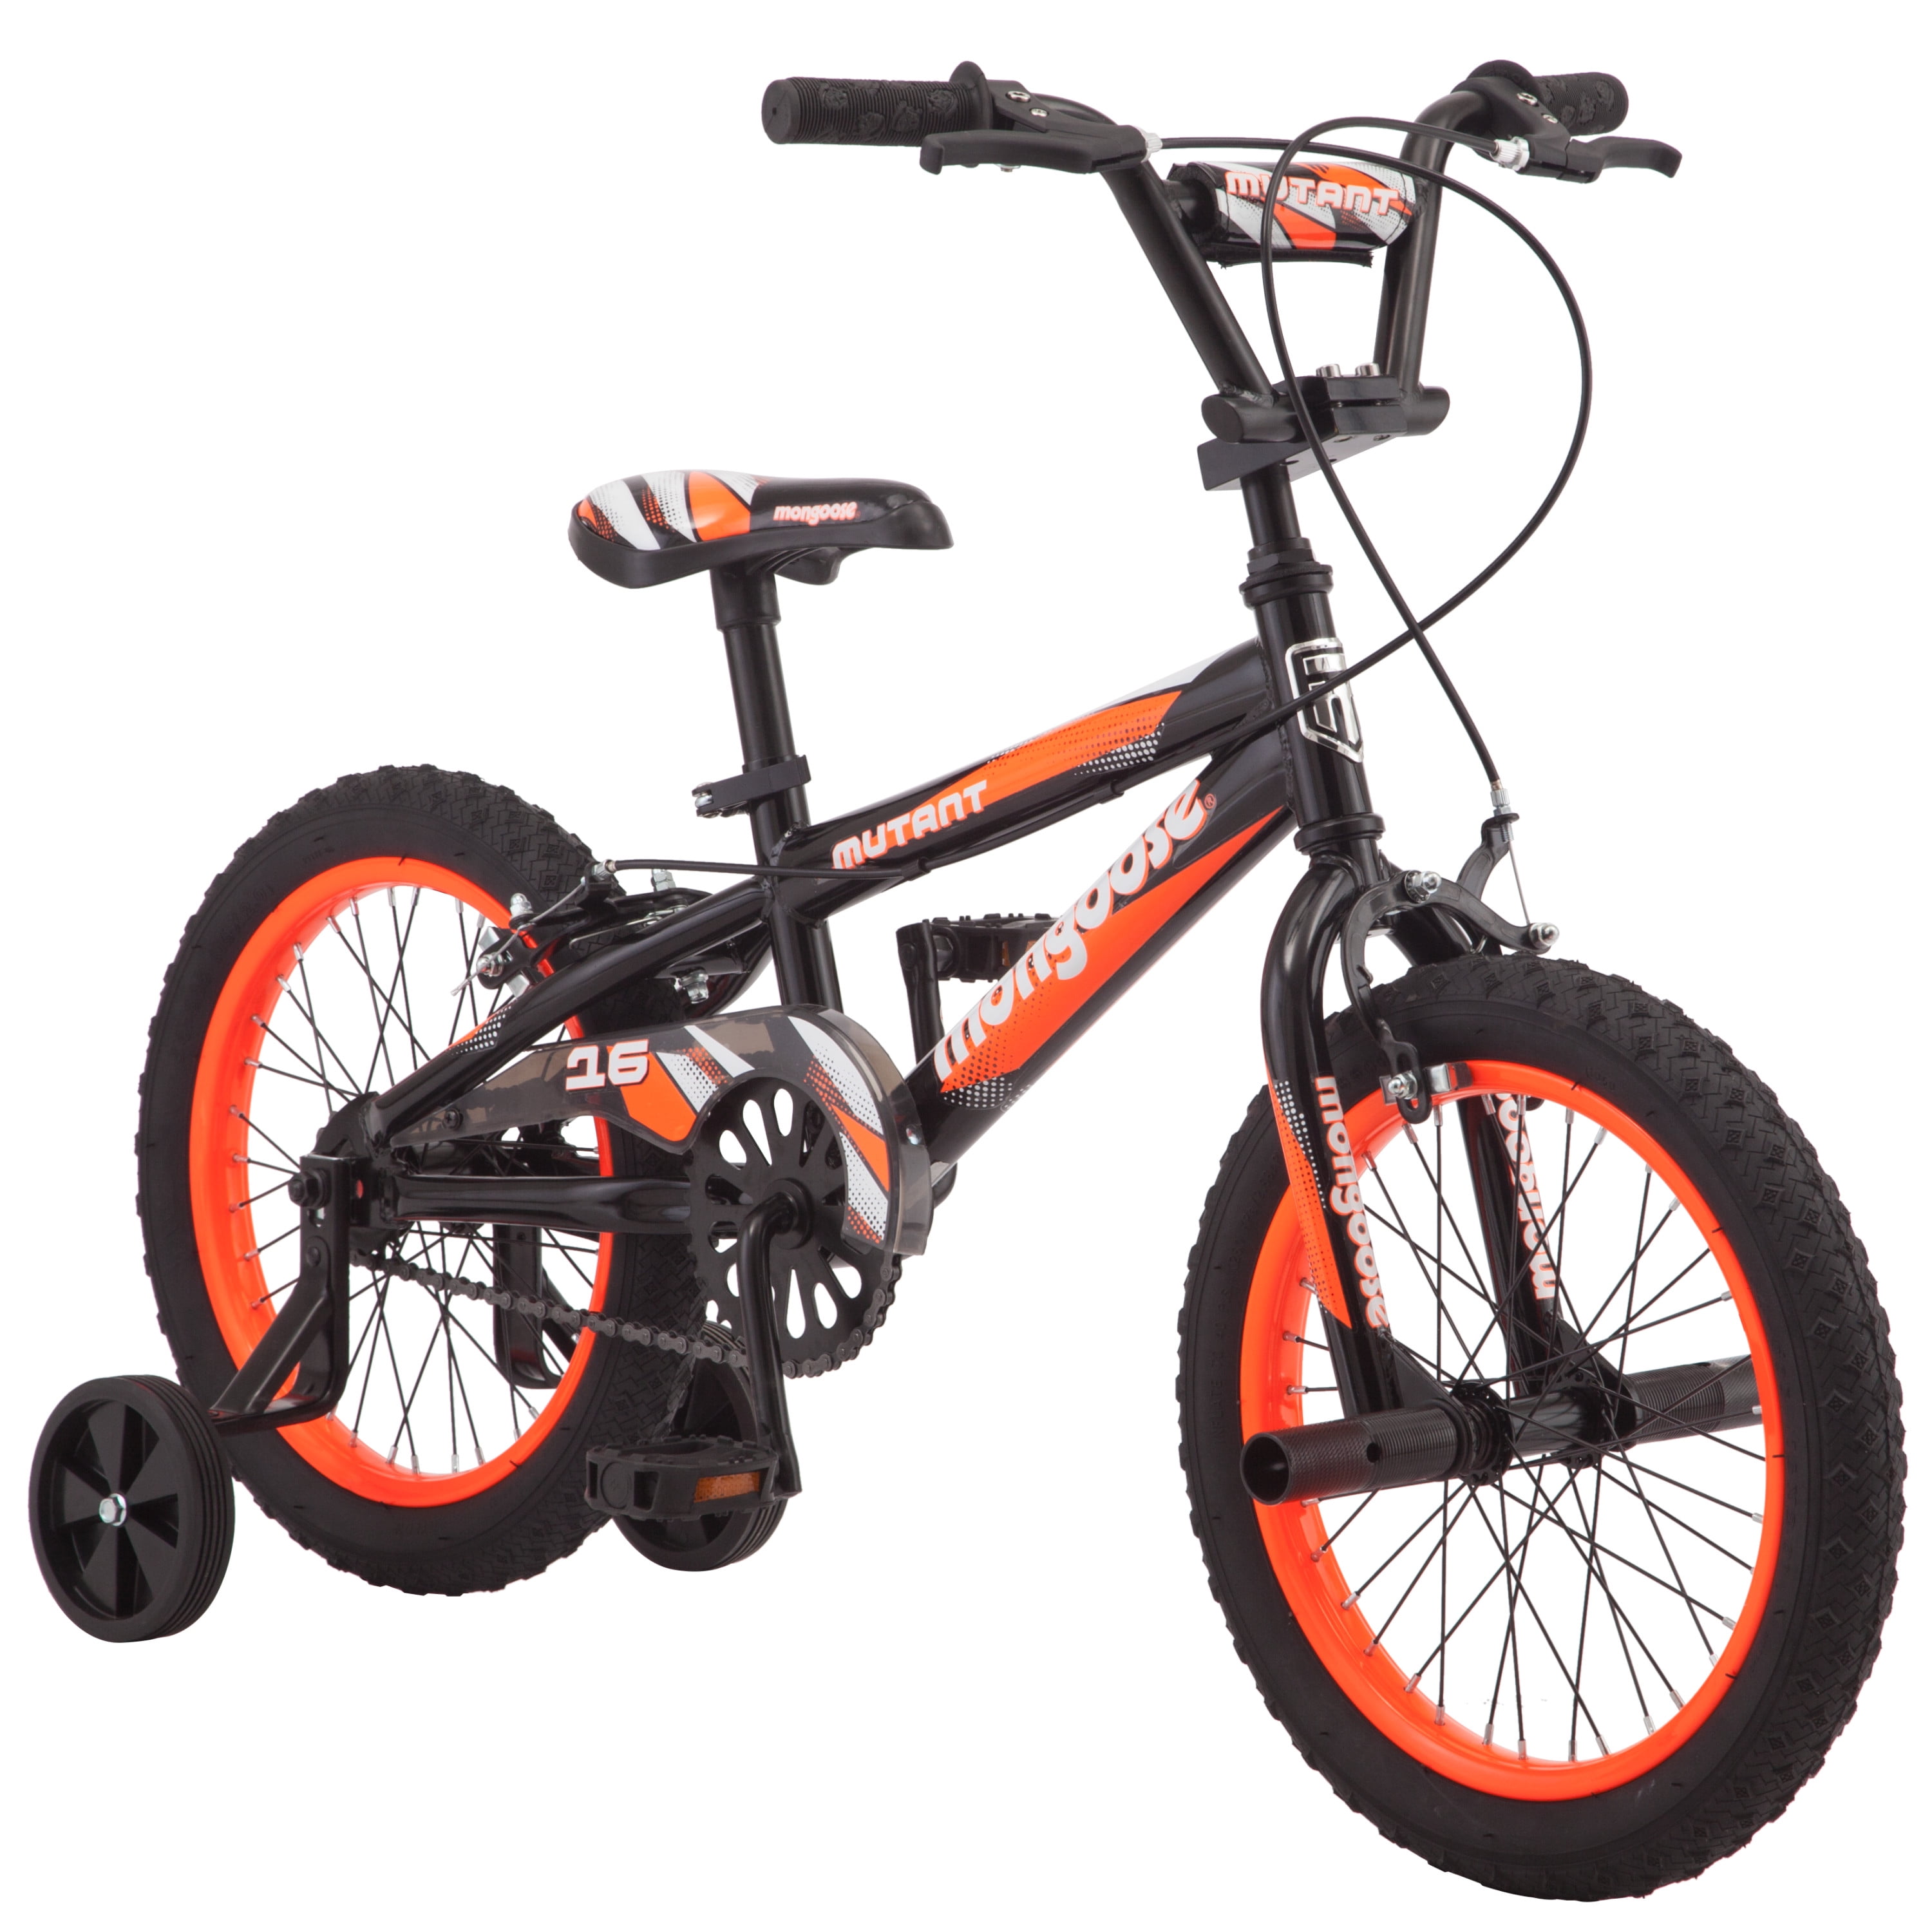 Kids Moto Bike 16 inch Motorbike Bicycle Blue BMX Cycling w/Stabilisers For Boys 